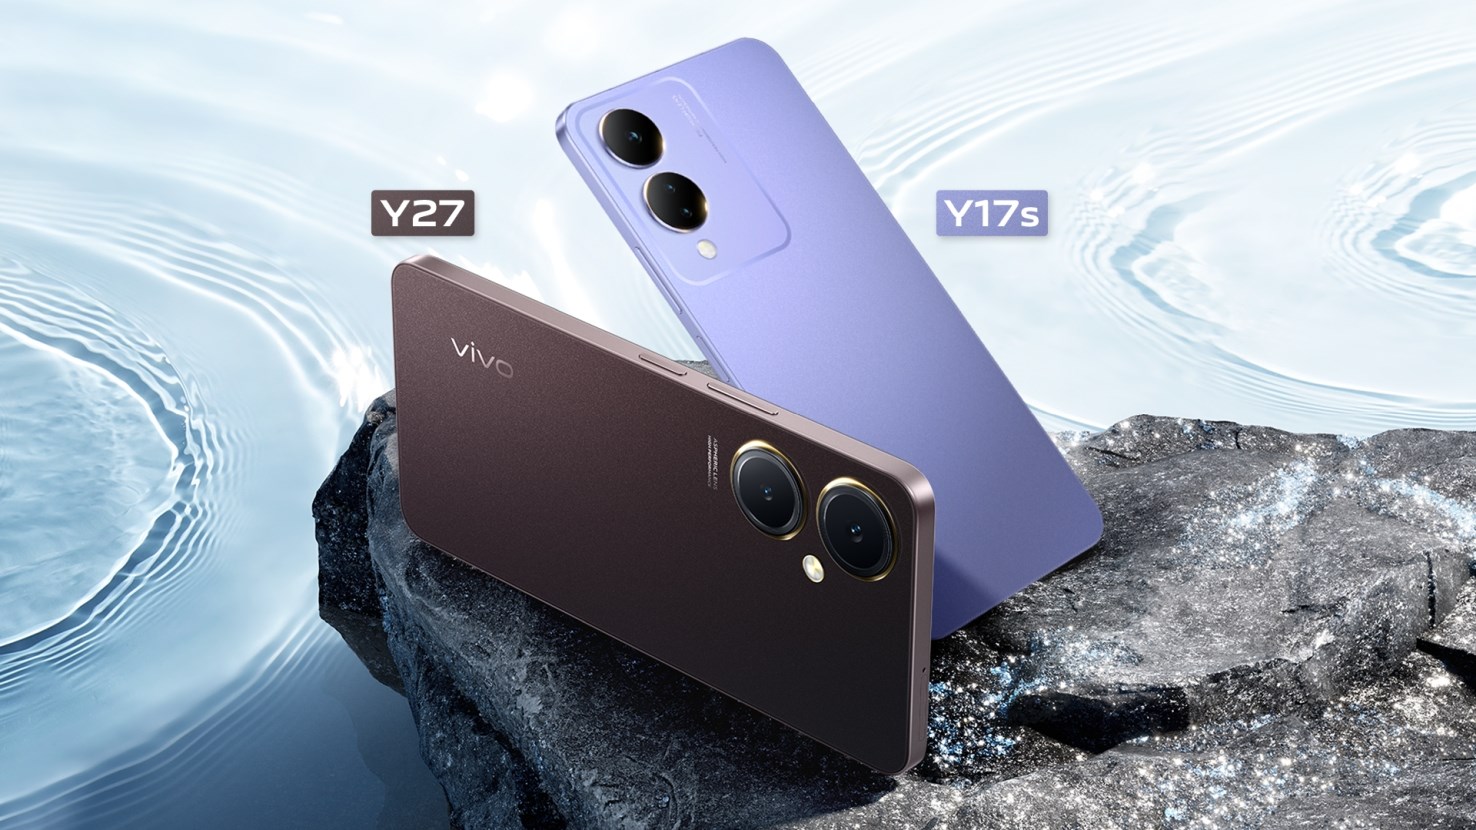 Bütçe telefonları Vivo Y27 ve Y17s Türkiye'de satışa sunuldu!